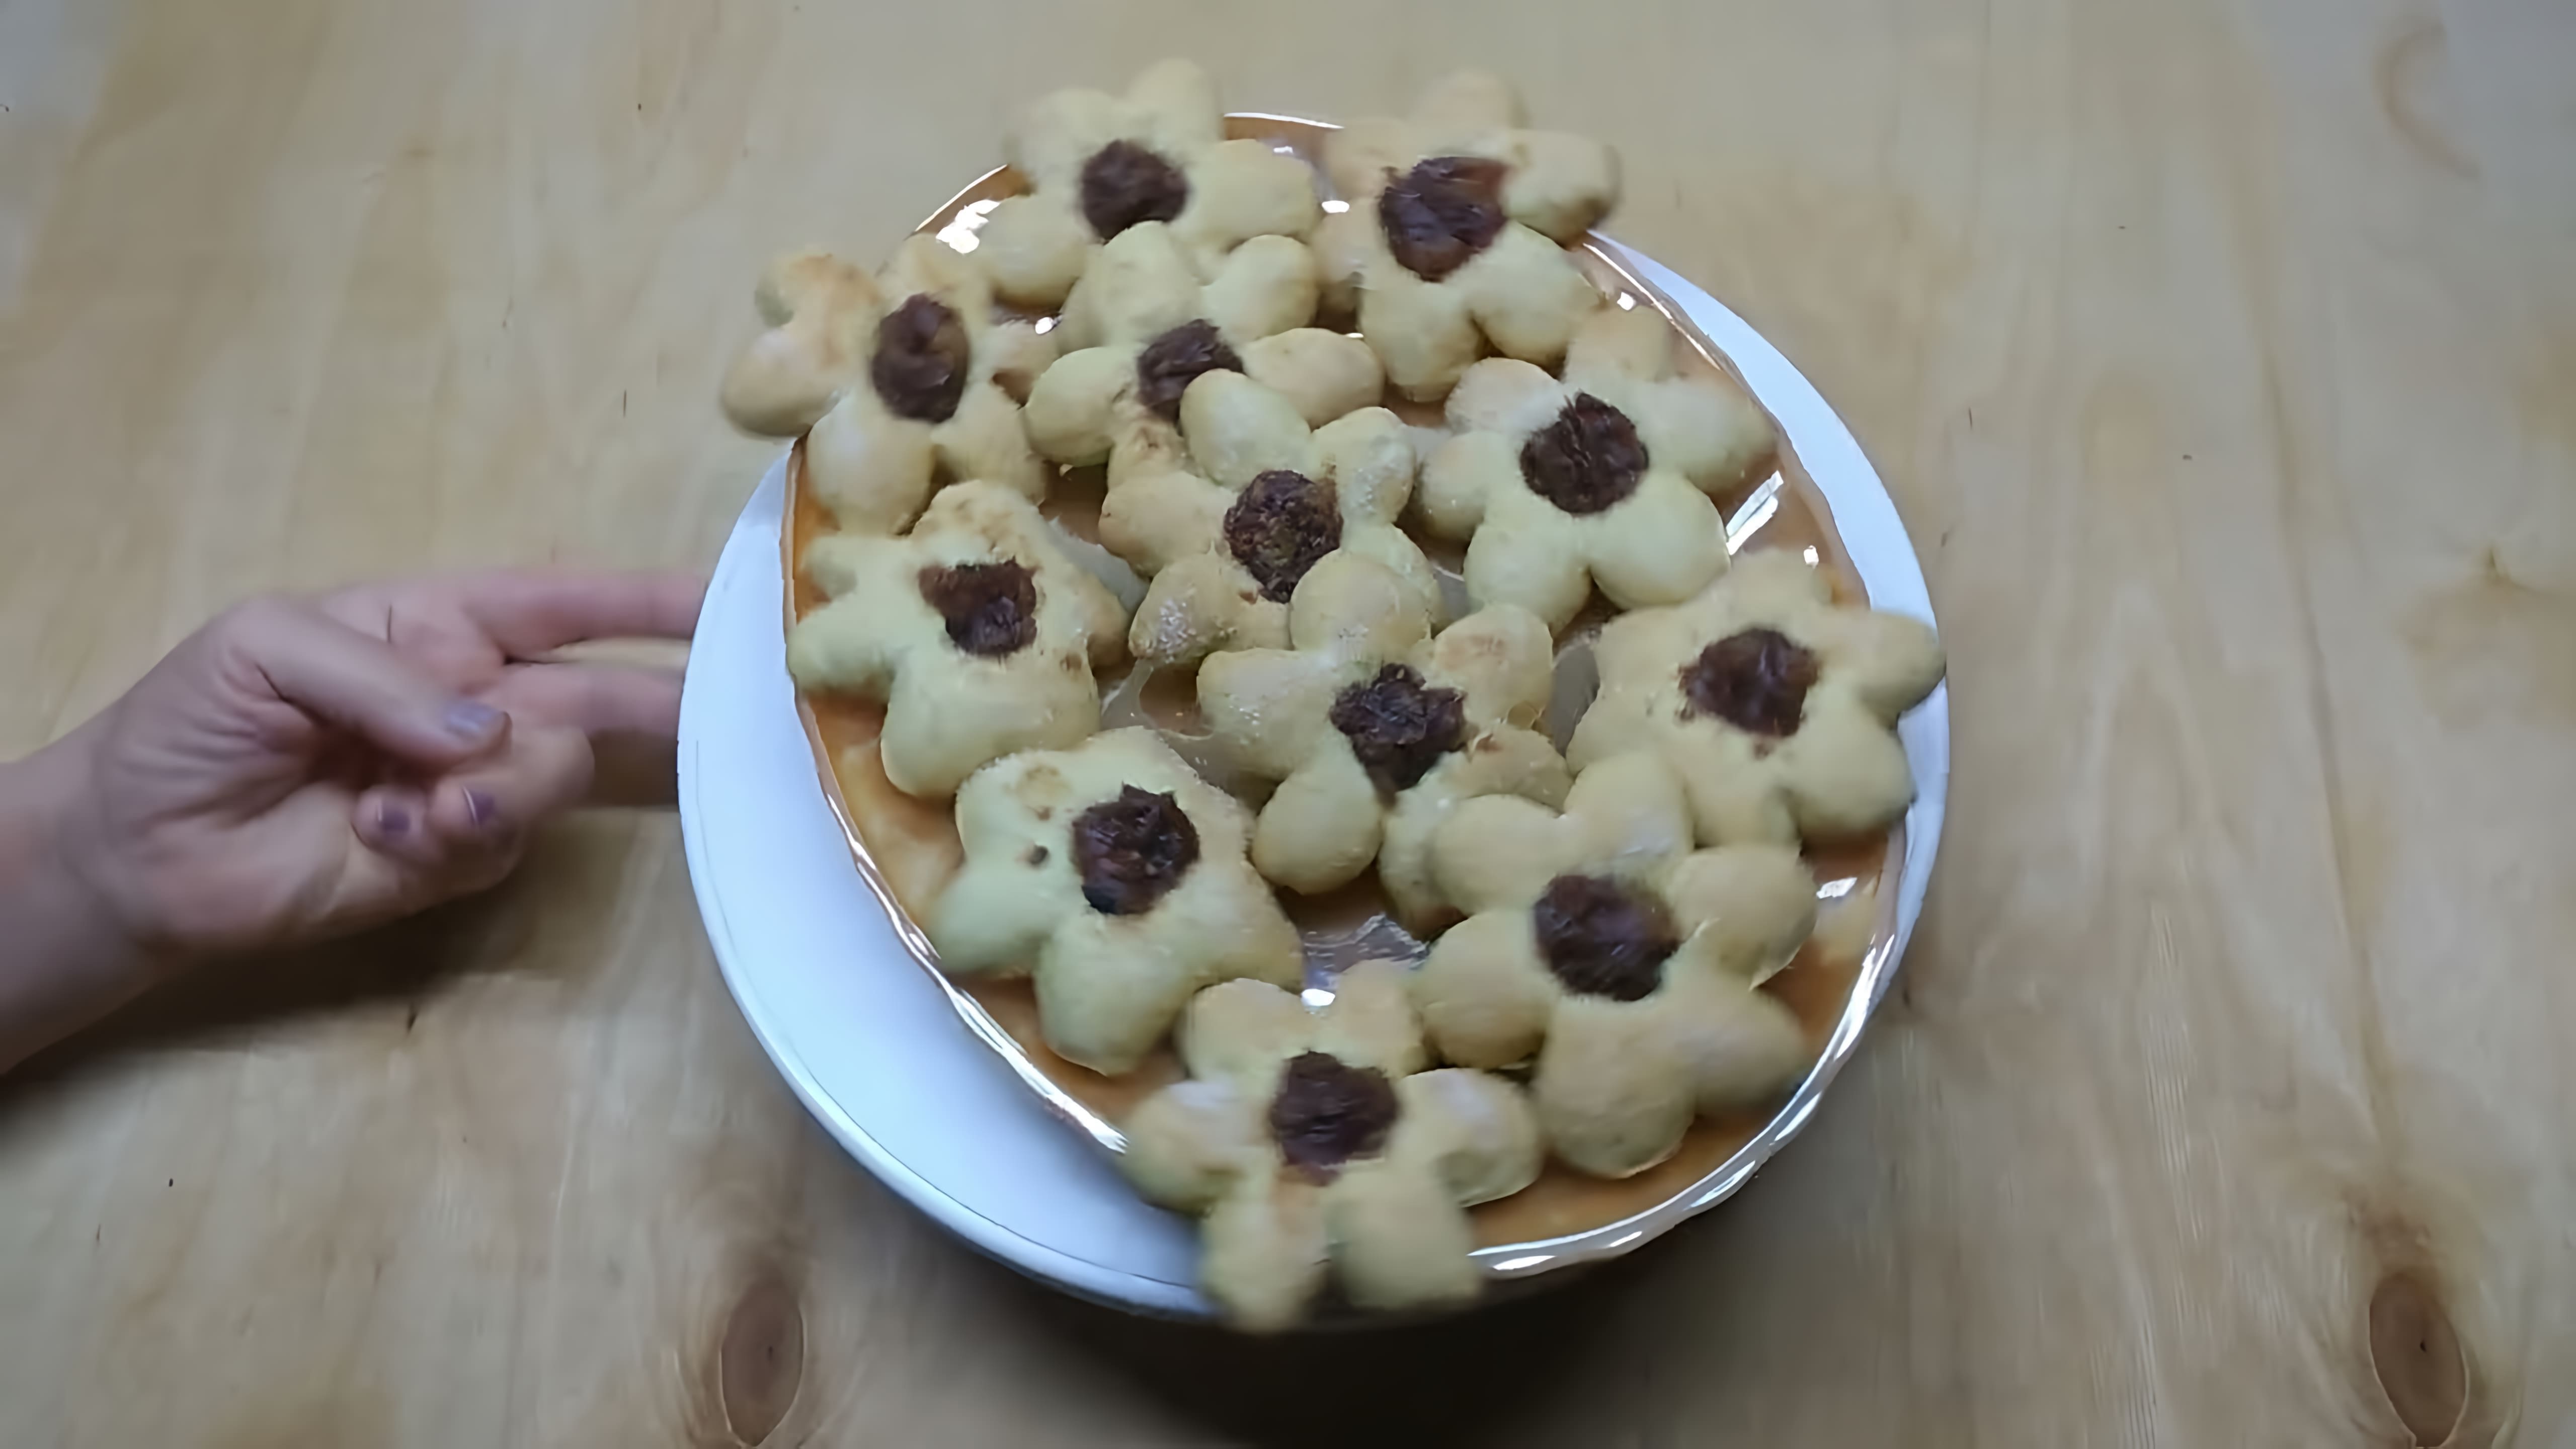 В этом видео демонстрируется процесс приготовления печенья в форме ромашек с яблочным пюре